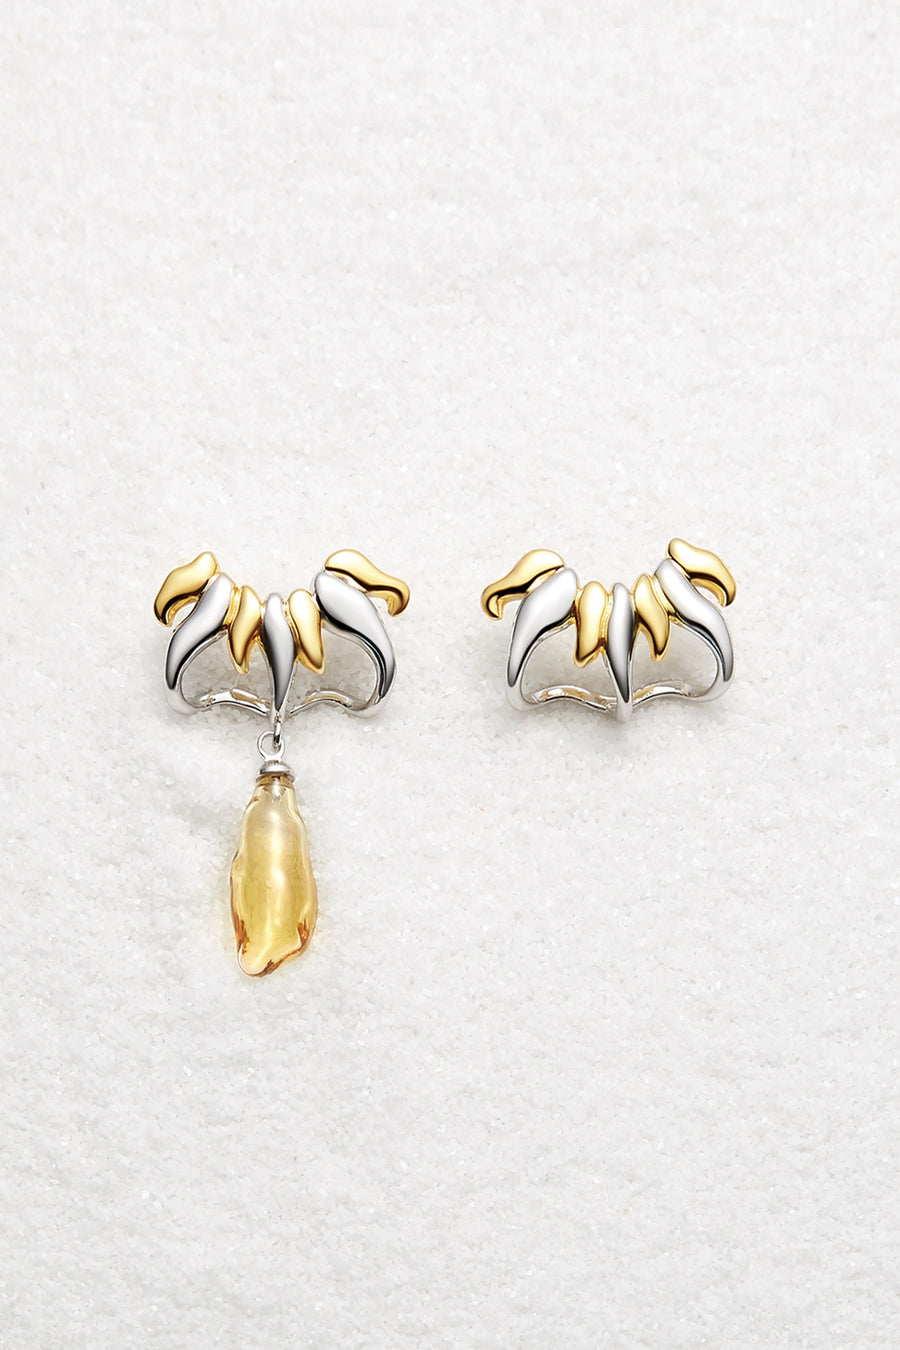 Apollo Yellow&White Gold Earrings